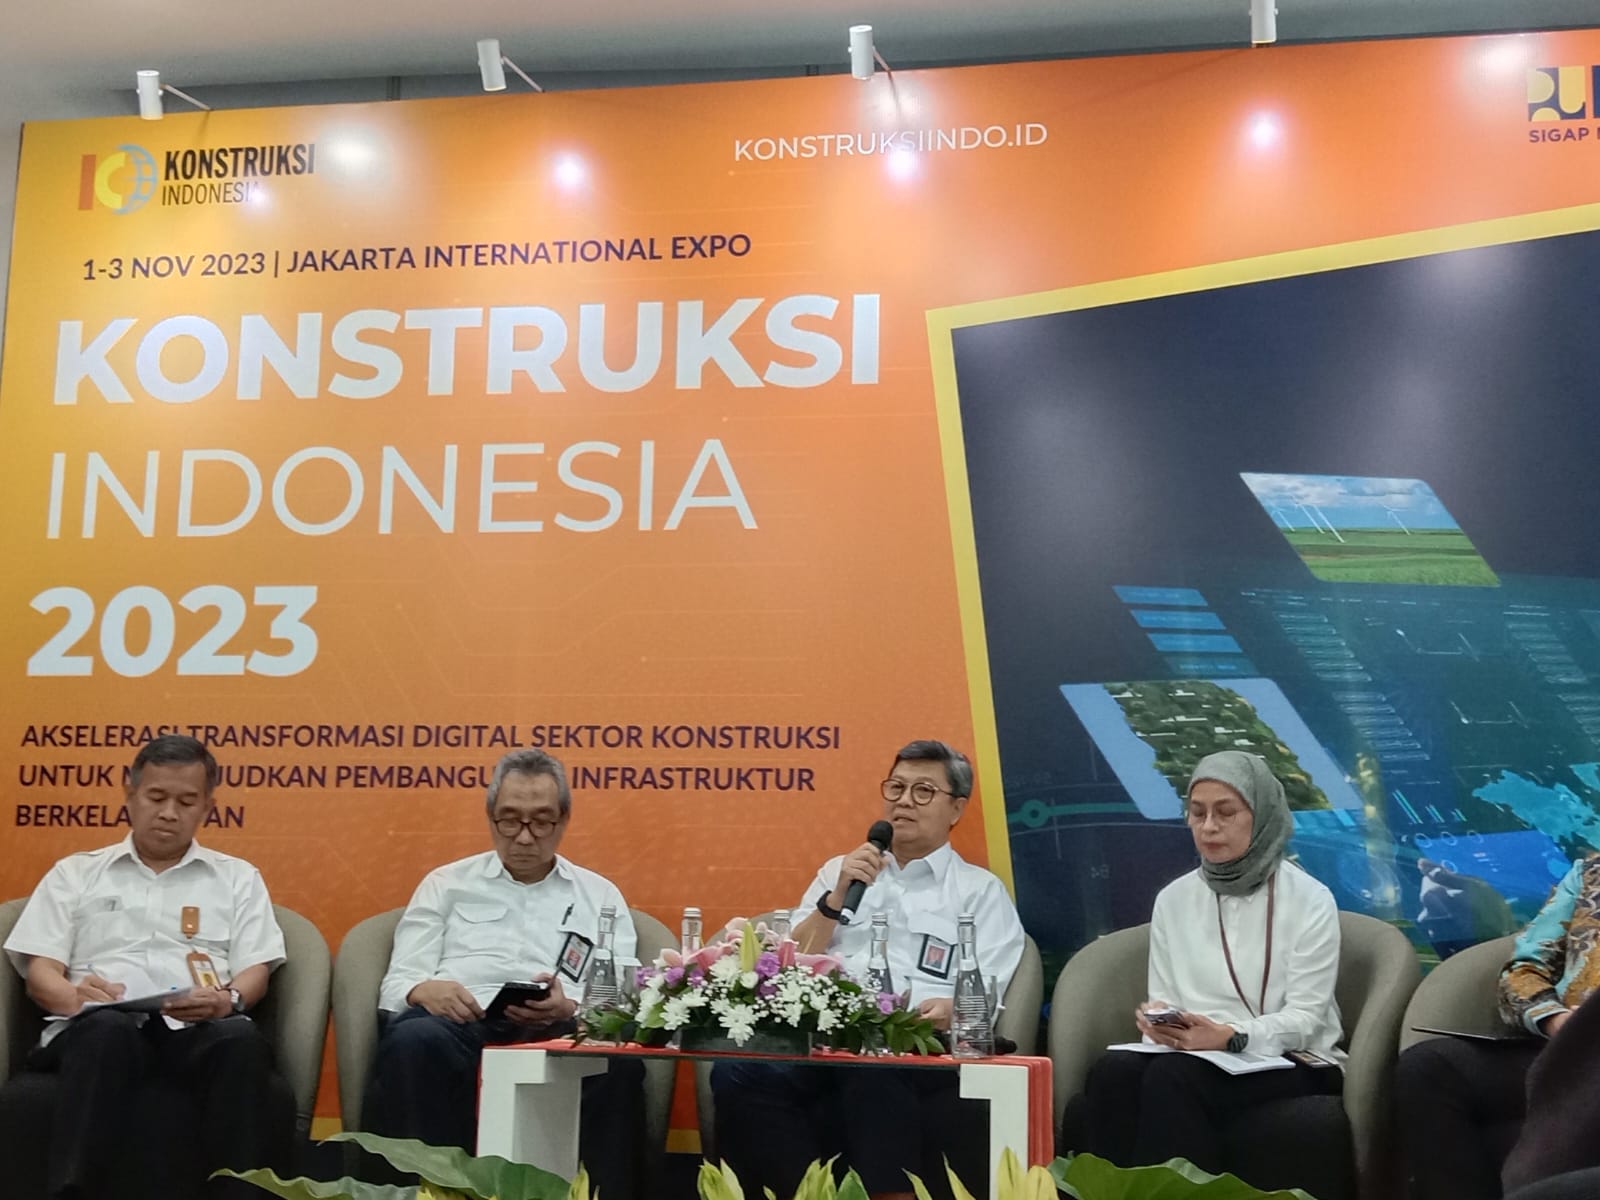 Konstruksi Indonesia 2023: Wujudkan Pembangunan Infrastruktur Berkelanjutan di Indonesia Melalui Transformasi Digital dan Teknologi Konstruksi